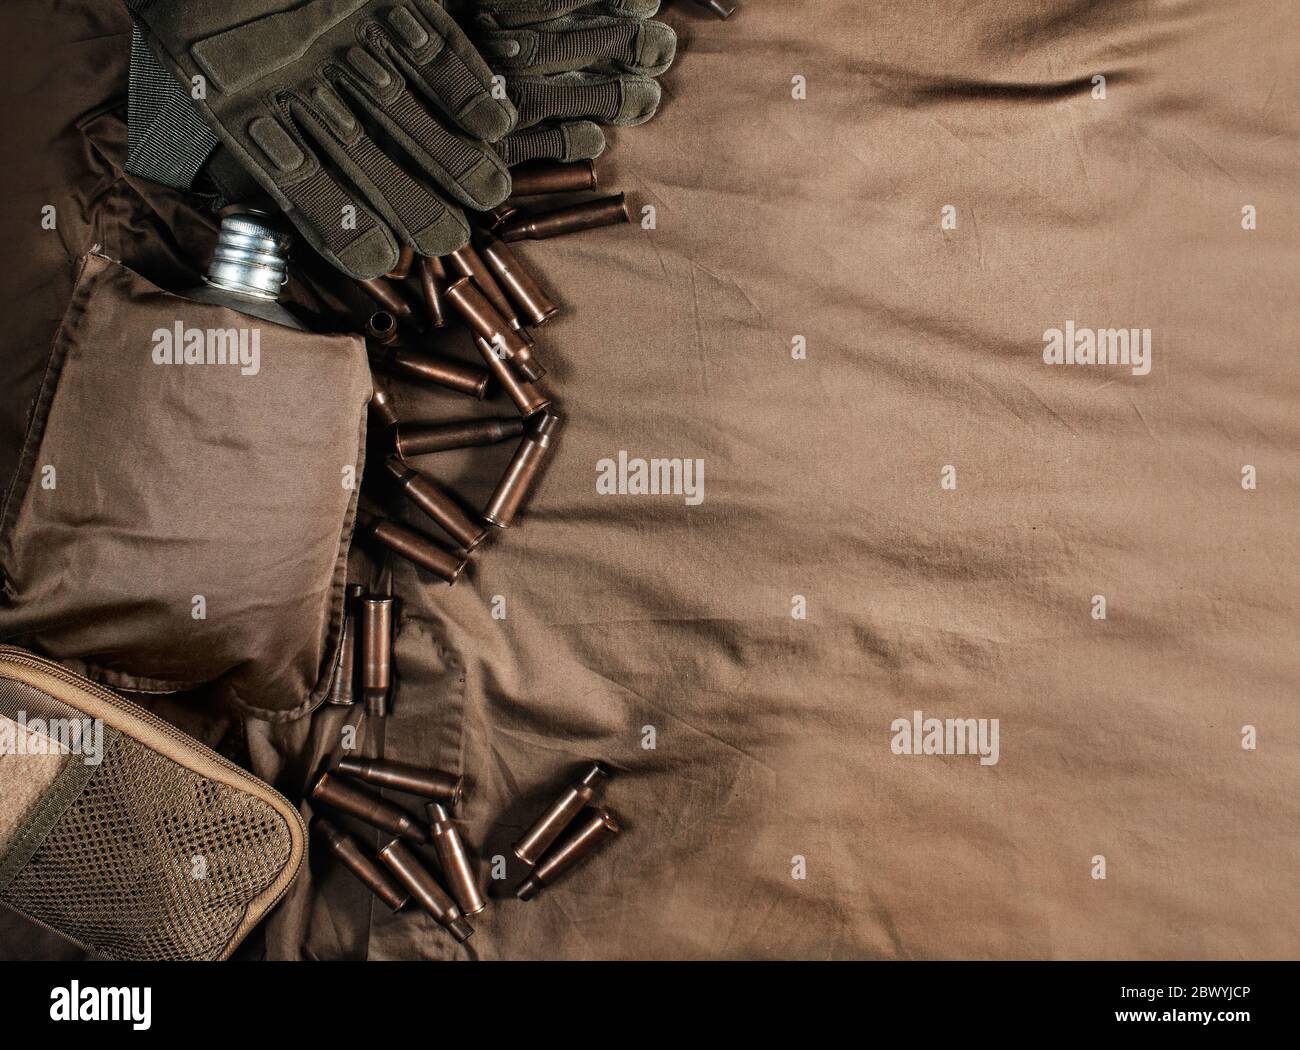 Photo d'une table militaire en tissu avec des obus de balle, des gants et une vue supérieure de la fiole. Banque D'Images